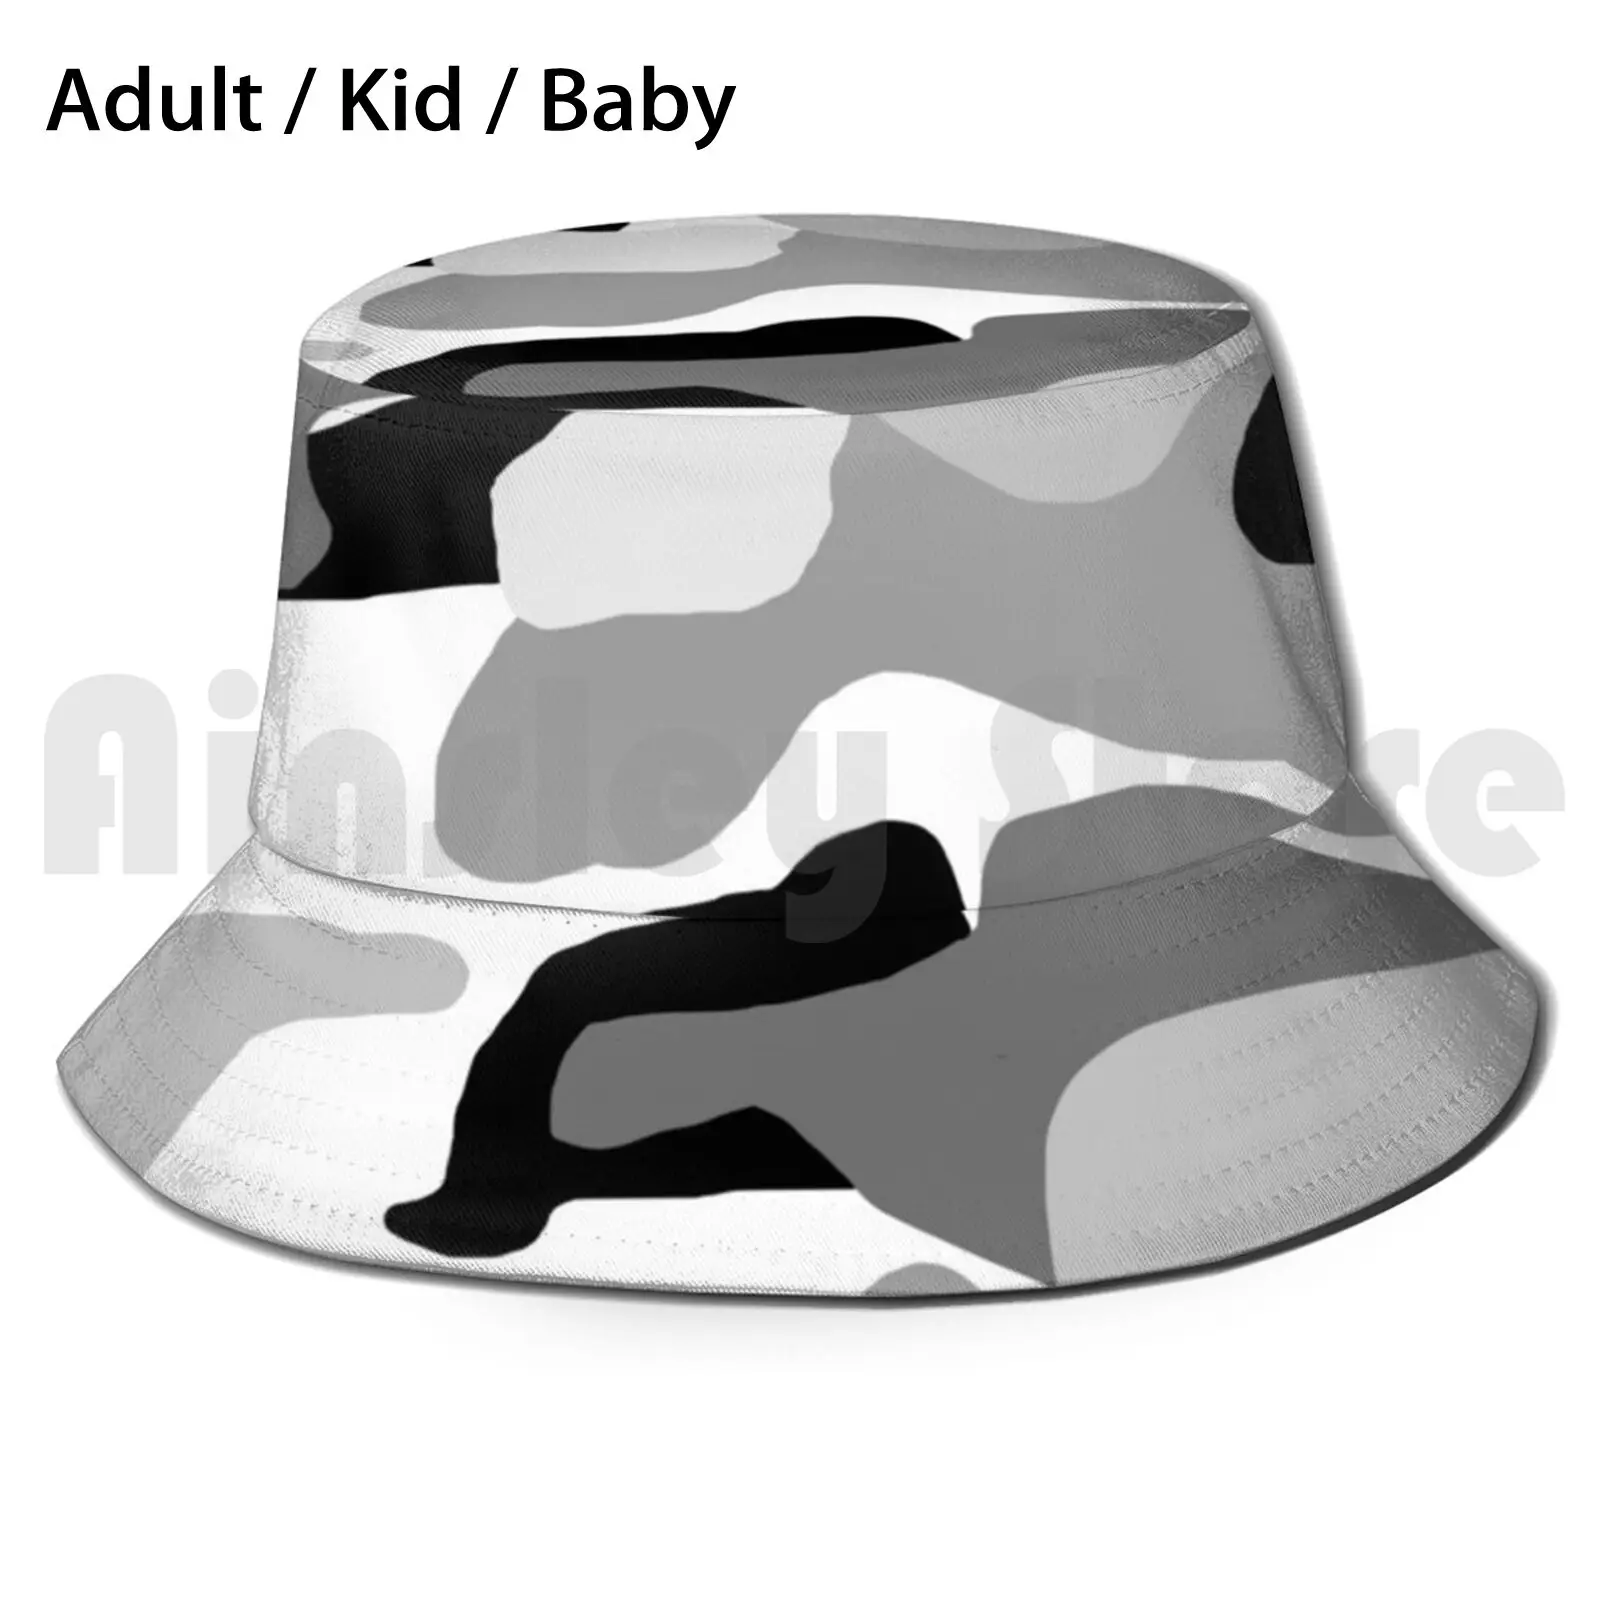 

Панама с черно-белым камуфляжным принтом для взрослых и детей, детские пляжные шляпы от солнца, камуфляжные военные шапки-хамелеоны